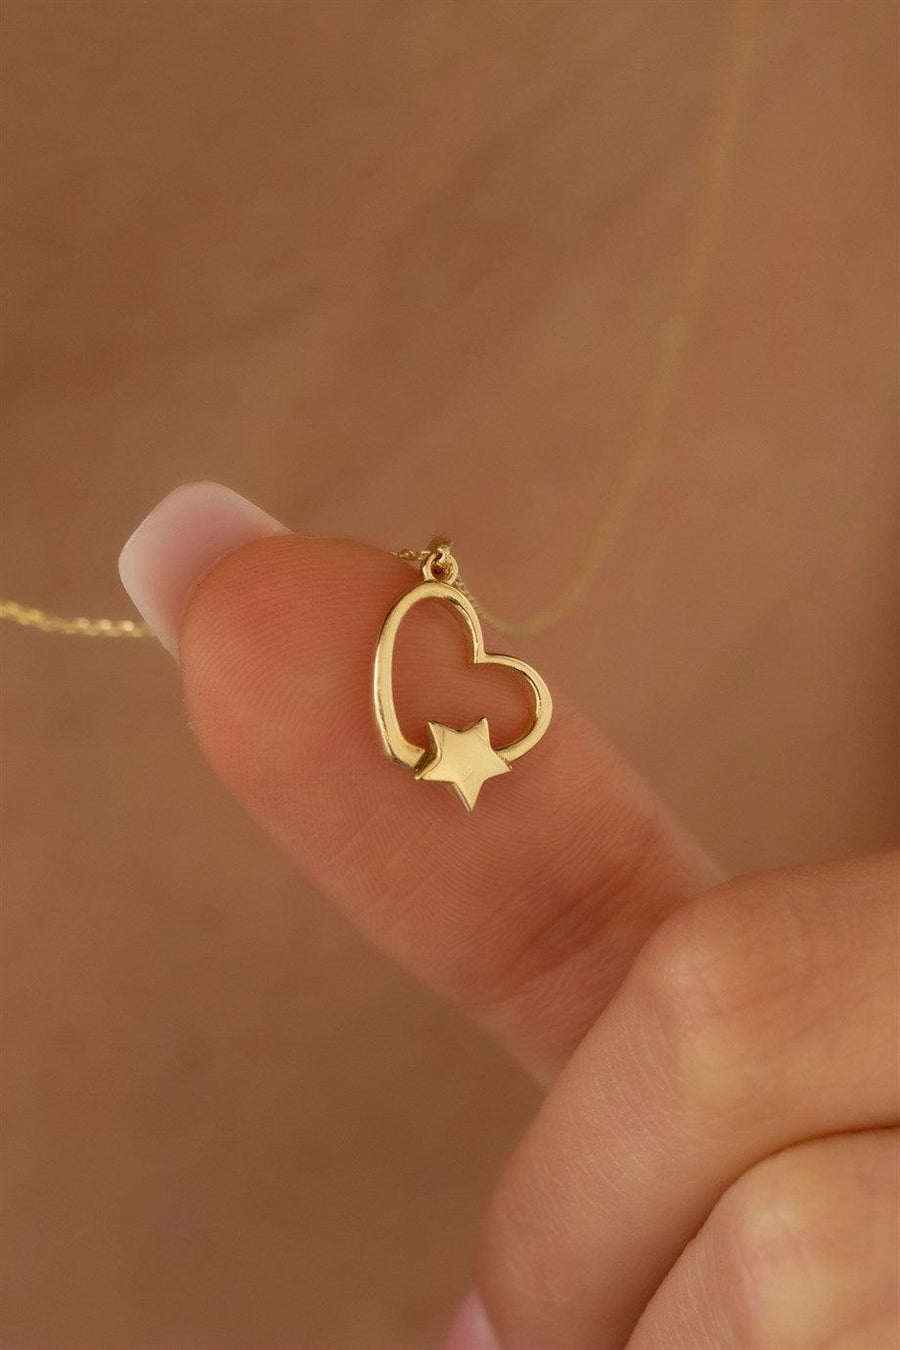 Golden Star Heart Necklace